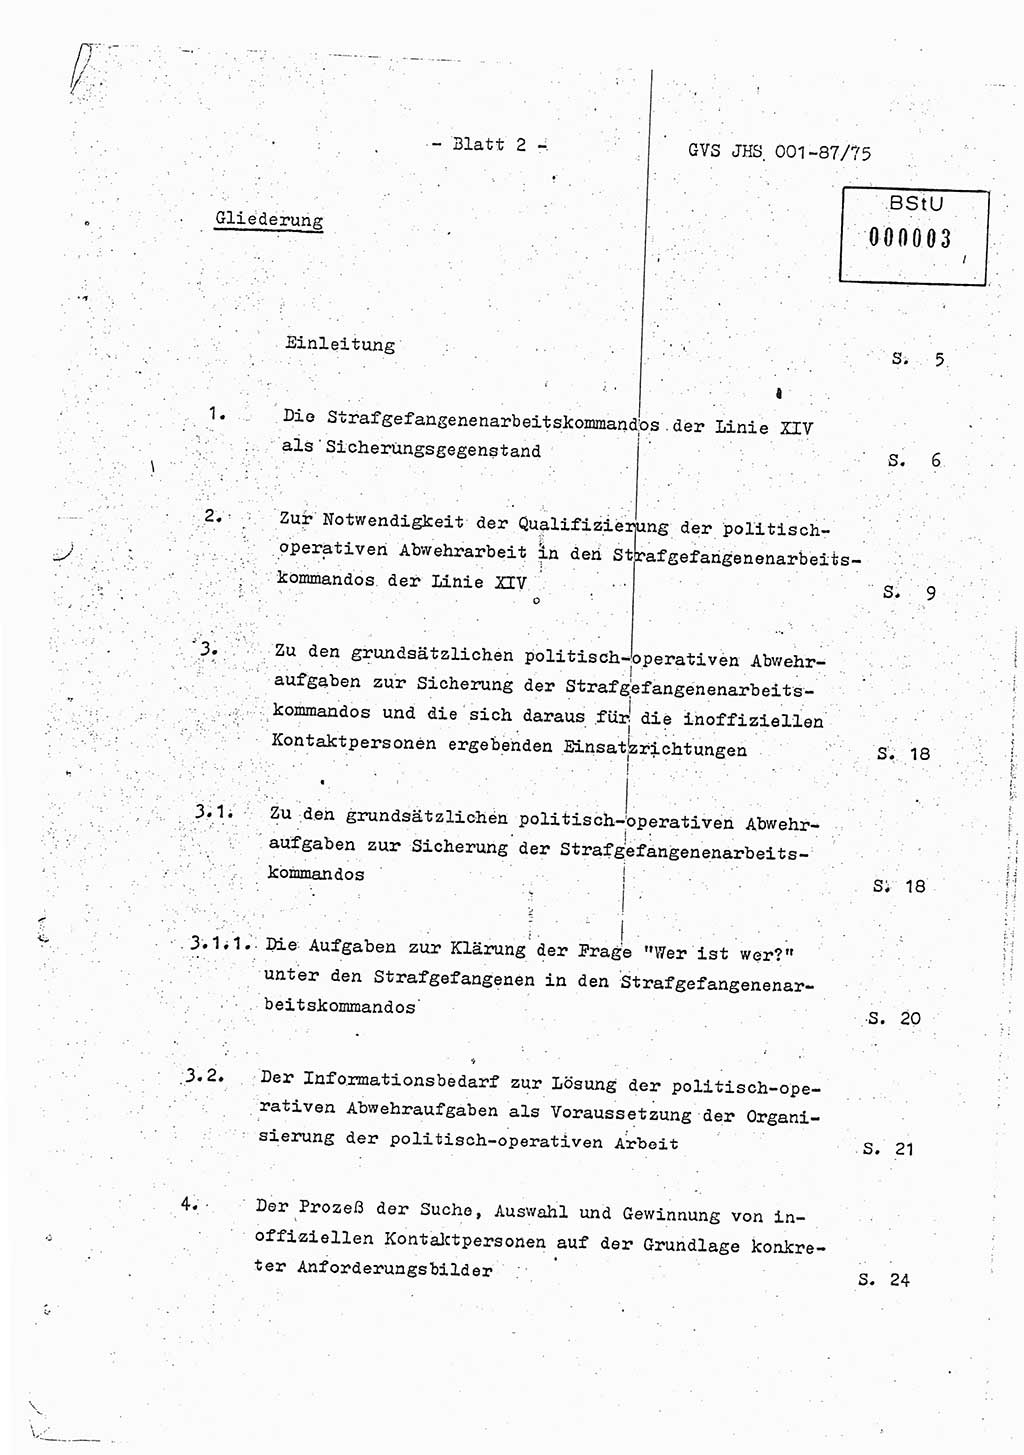 Diplomarbeit Hauptmann Volkmar Heinz (Abt. ⅩⅣ), Oberleutnant Lothar Rüdiger (BV Lpz. Abt. Ⅺ), Ministerium für Staatssicherheit (MfS) [Deutsche Demokratische Republik (DDR)], Juristische Hochschule (JHS), Geheime Verschlußsache (GVS) o001-87/75, Potsdam 1975, Seite 2 (Dipl.-Arb. MfS DDR JHS GVS o001-87/75 1975, S. 2)